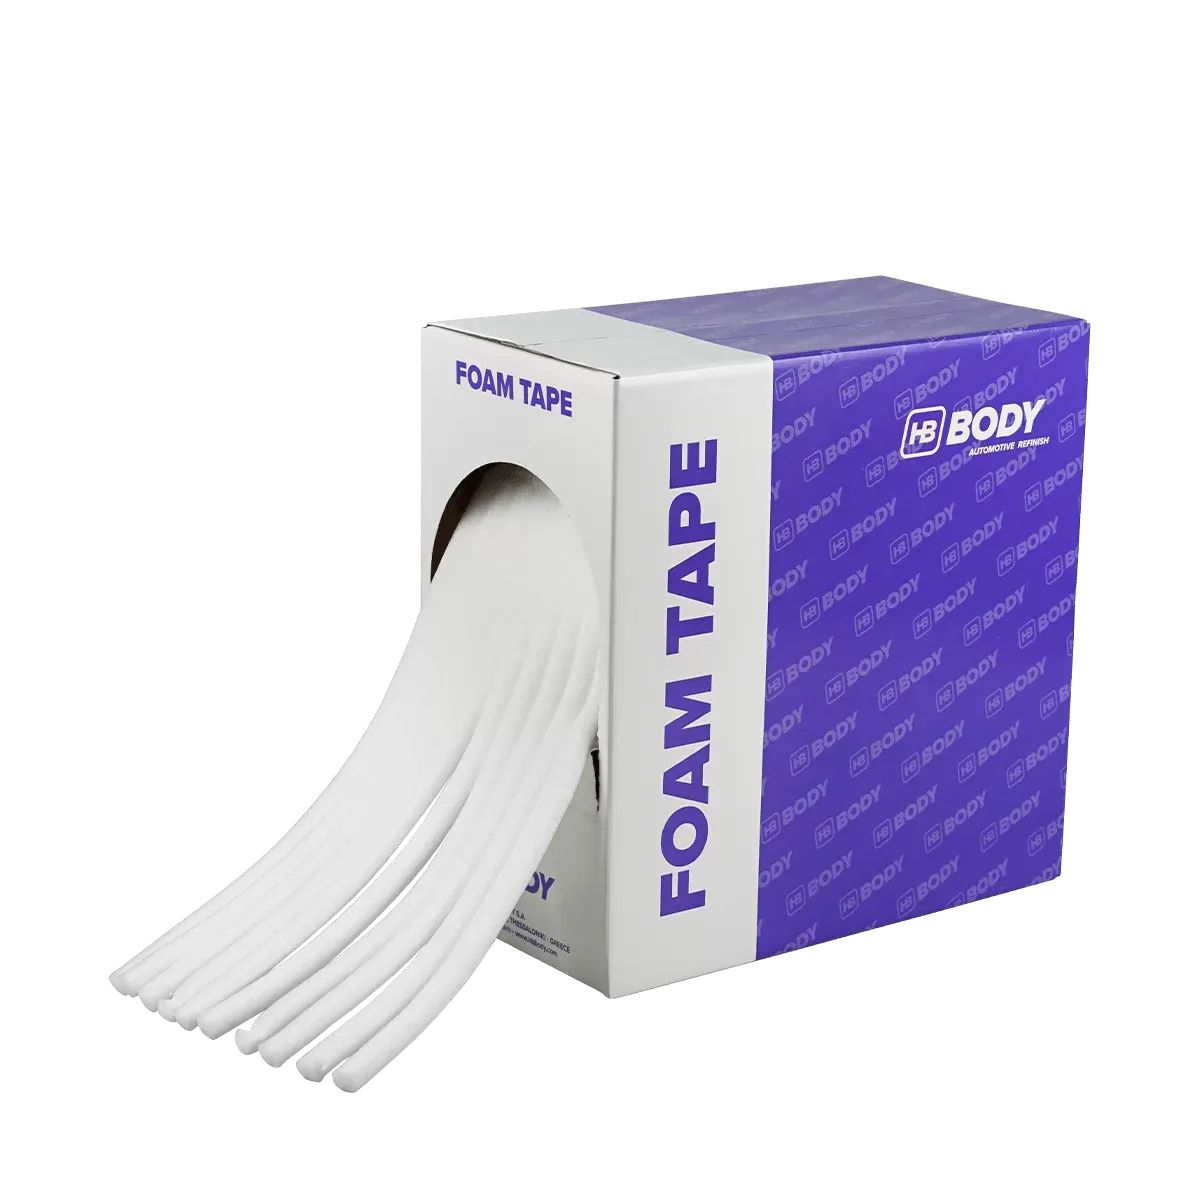 Body Foam Tape Валик для проємів 13мм, 5м х 11шт=55м